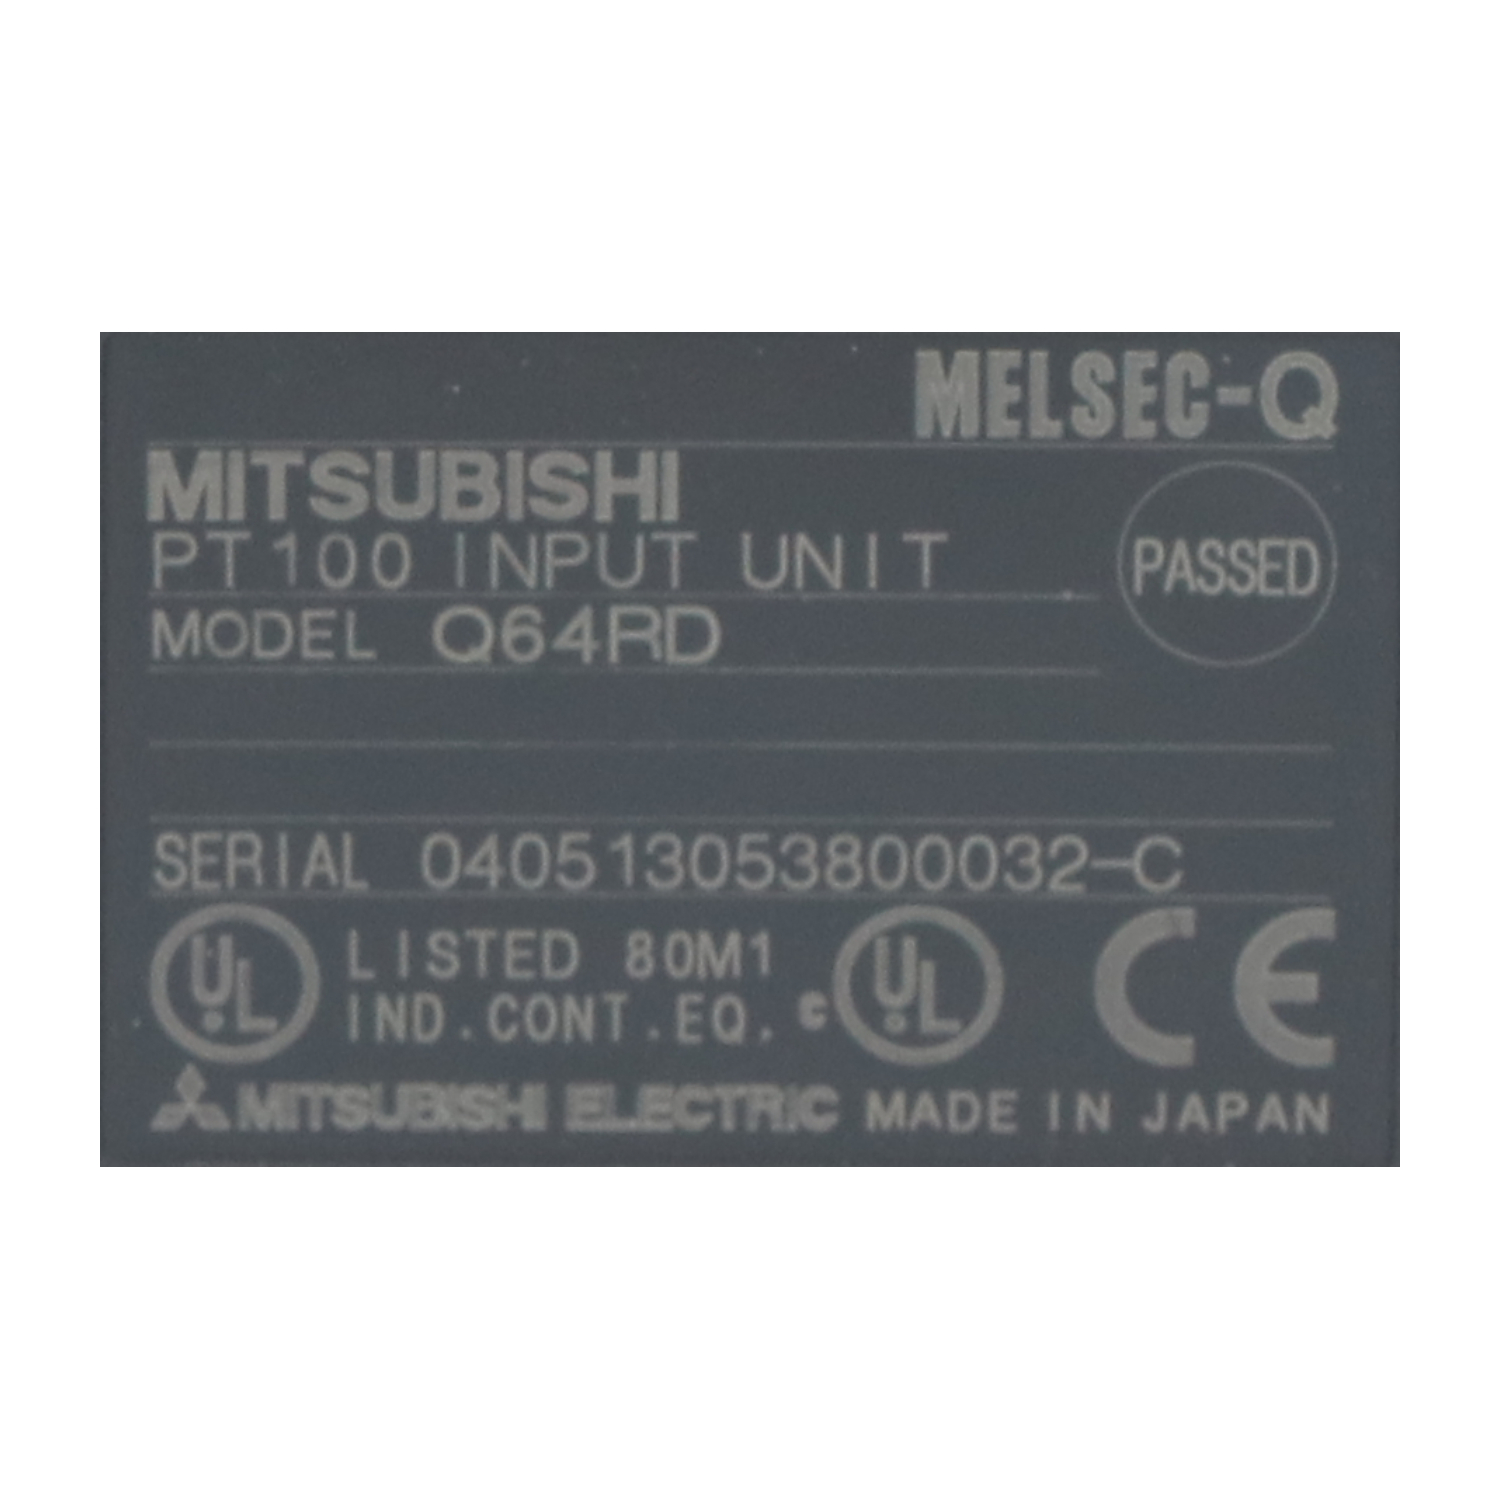 Mitsubishi Q64RD Maxodeals